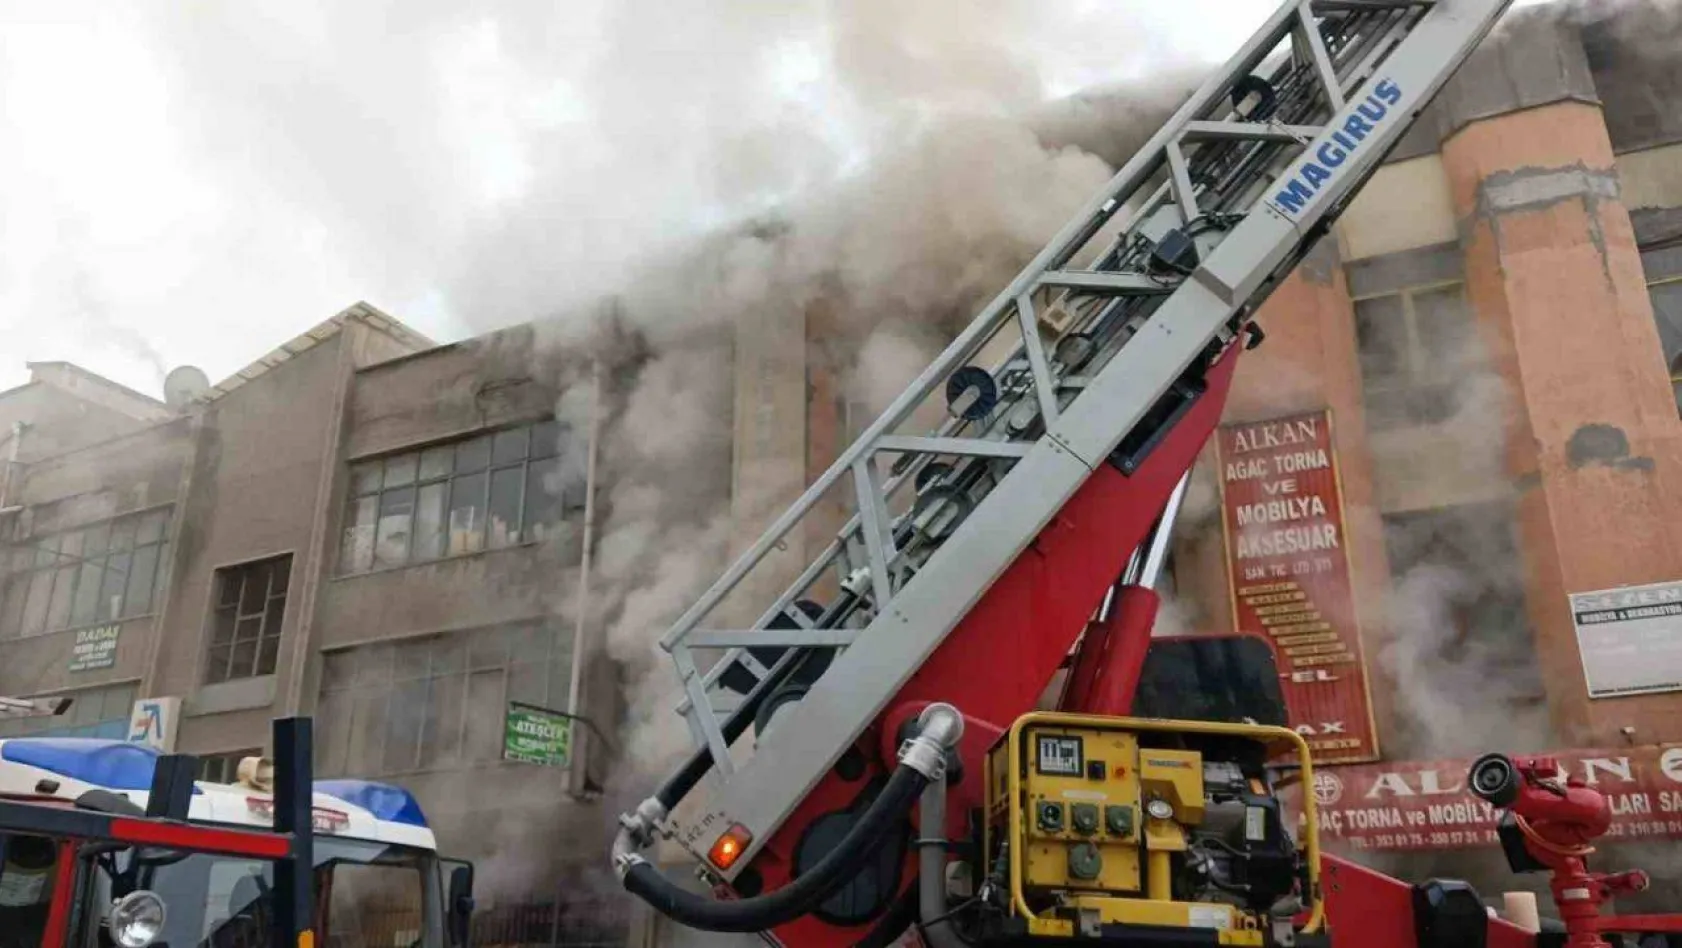 Ankara'da torna ve mobilya atölyesinde yangın